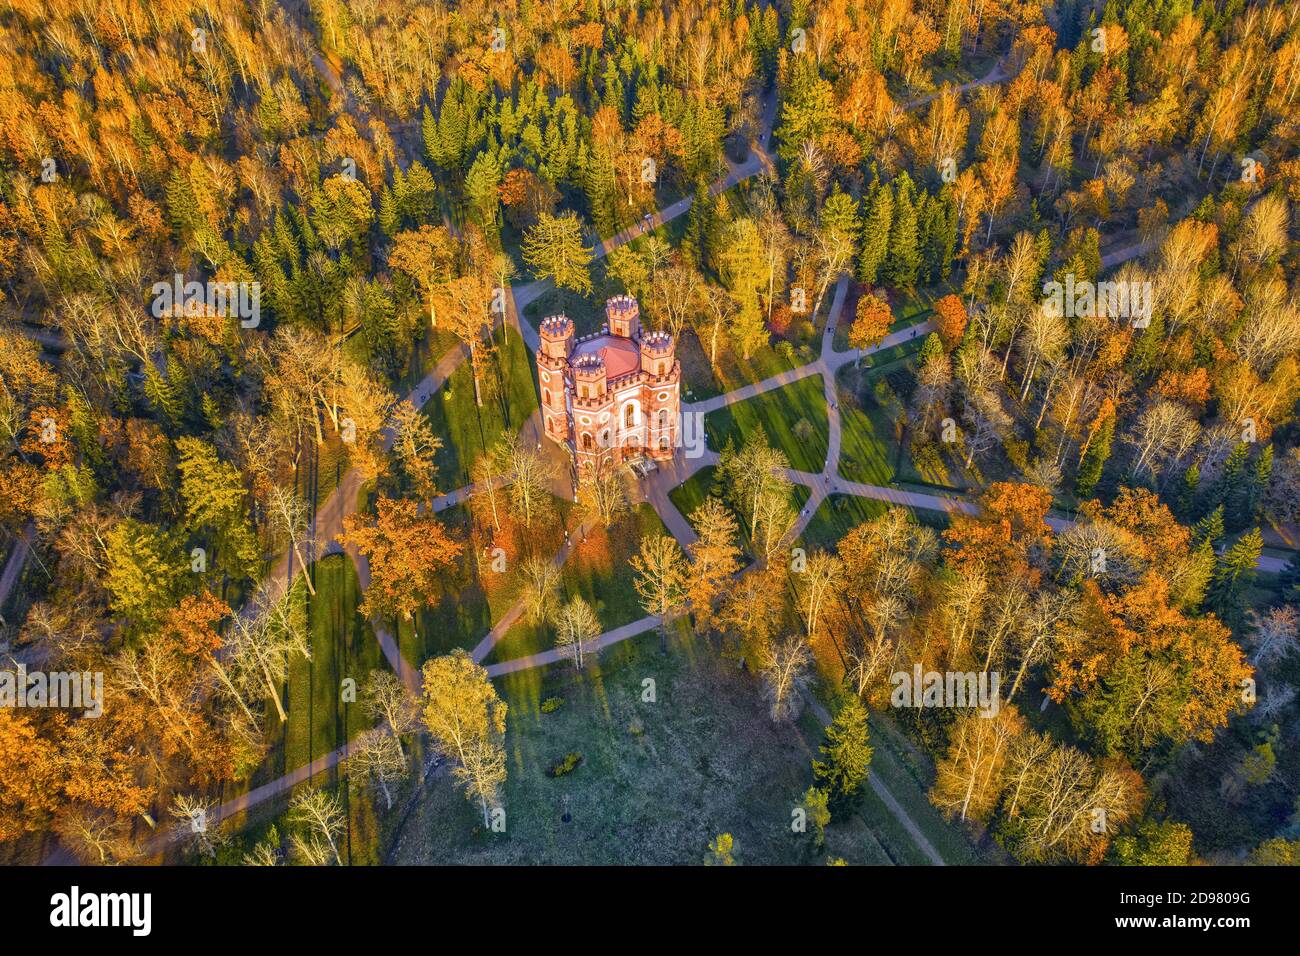 Arsenal Pavilion dans le parc Alexander de Tsarskoye Selo vue aérienne. Paysage aux couleurs vives de l'automne Banque D'Images